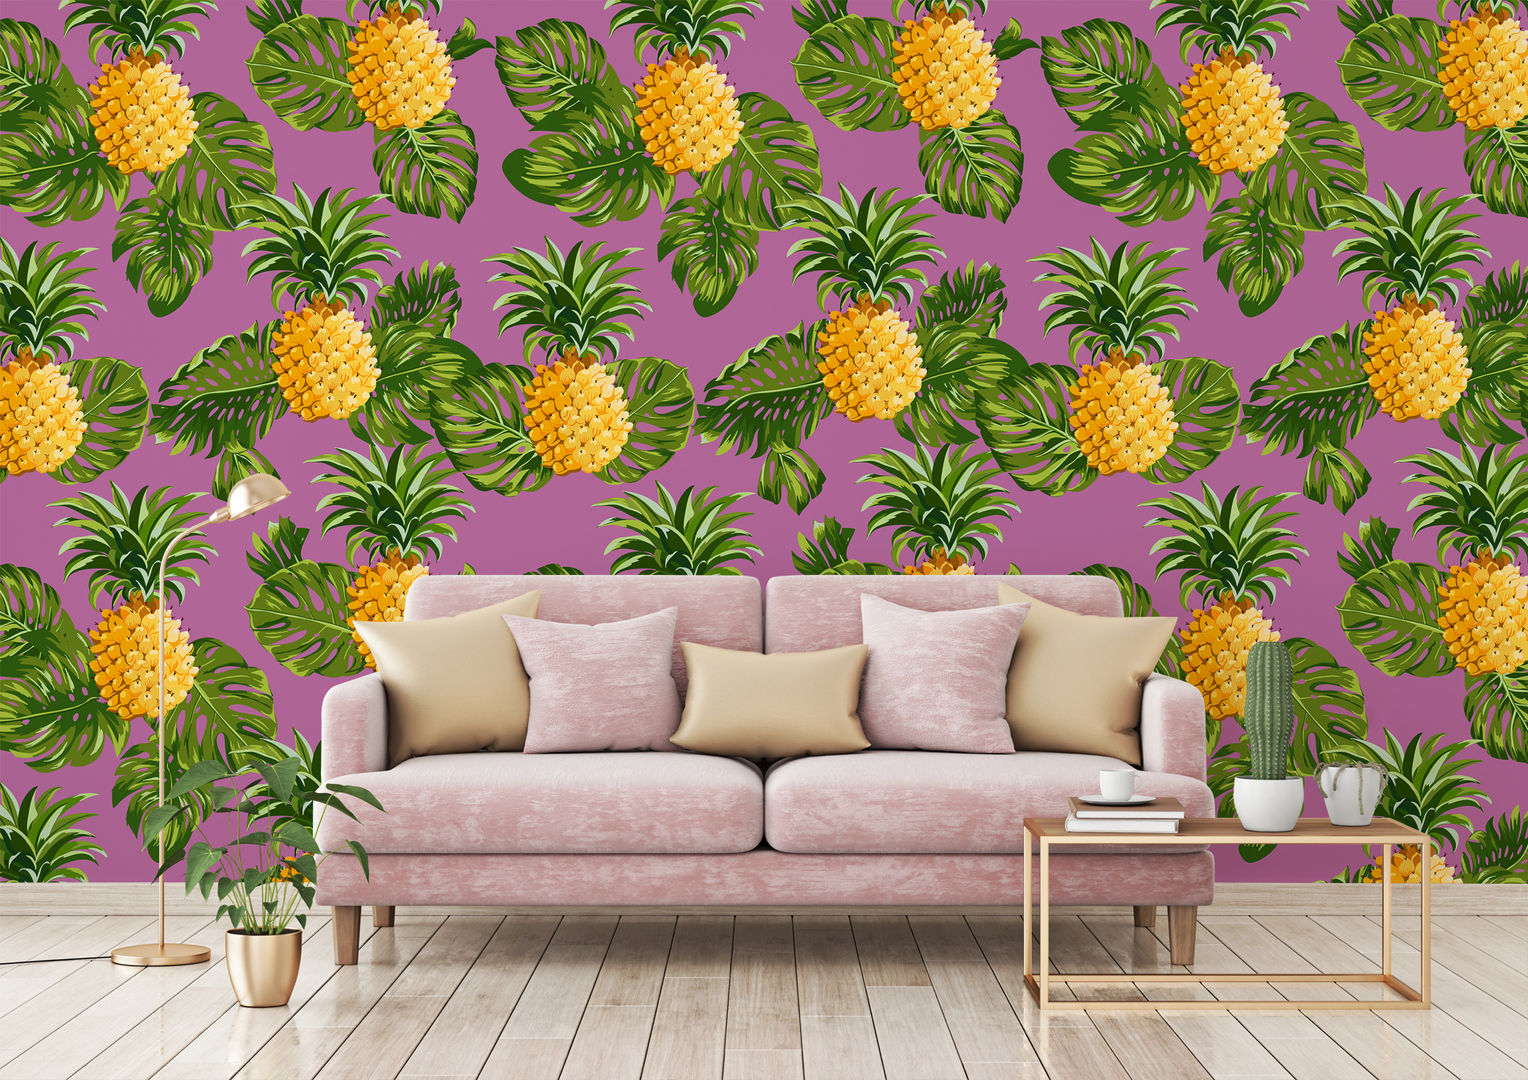 HYPNOTIC PINEAPPLES Pixers Ruang Keluarga Tropis Pixers,pink,pineapple,wallmural,wallpaper,tropical